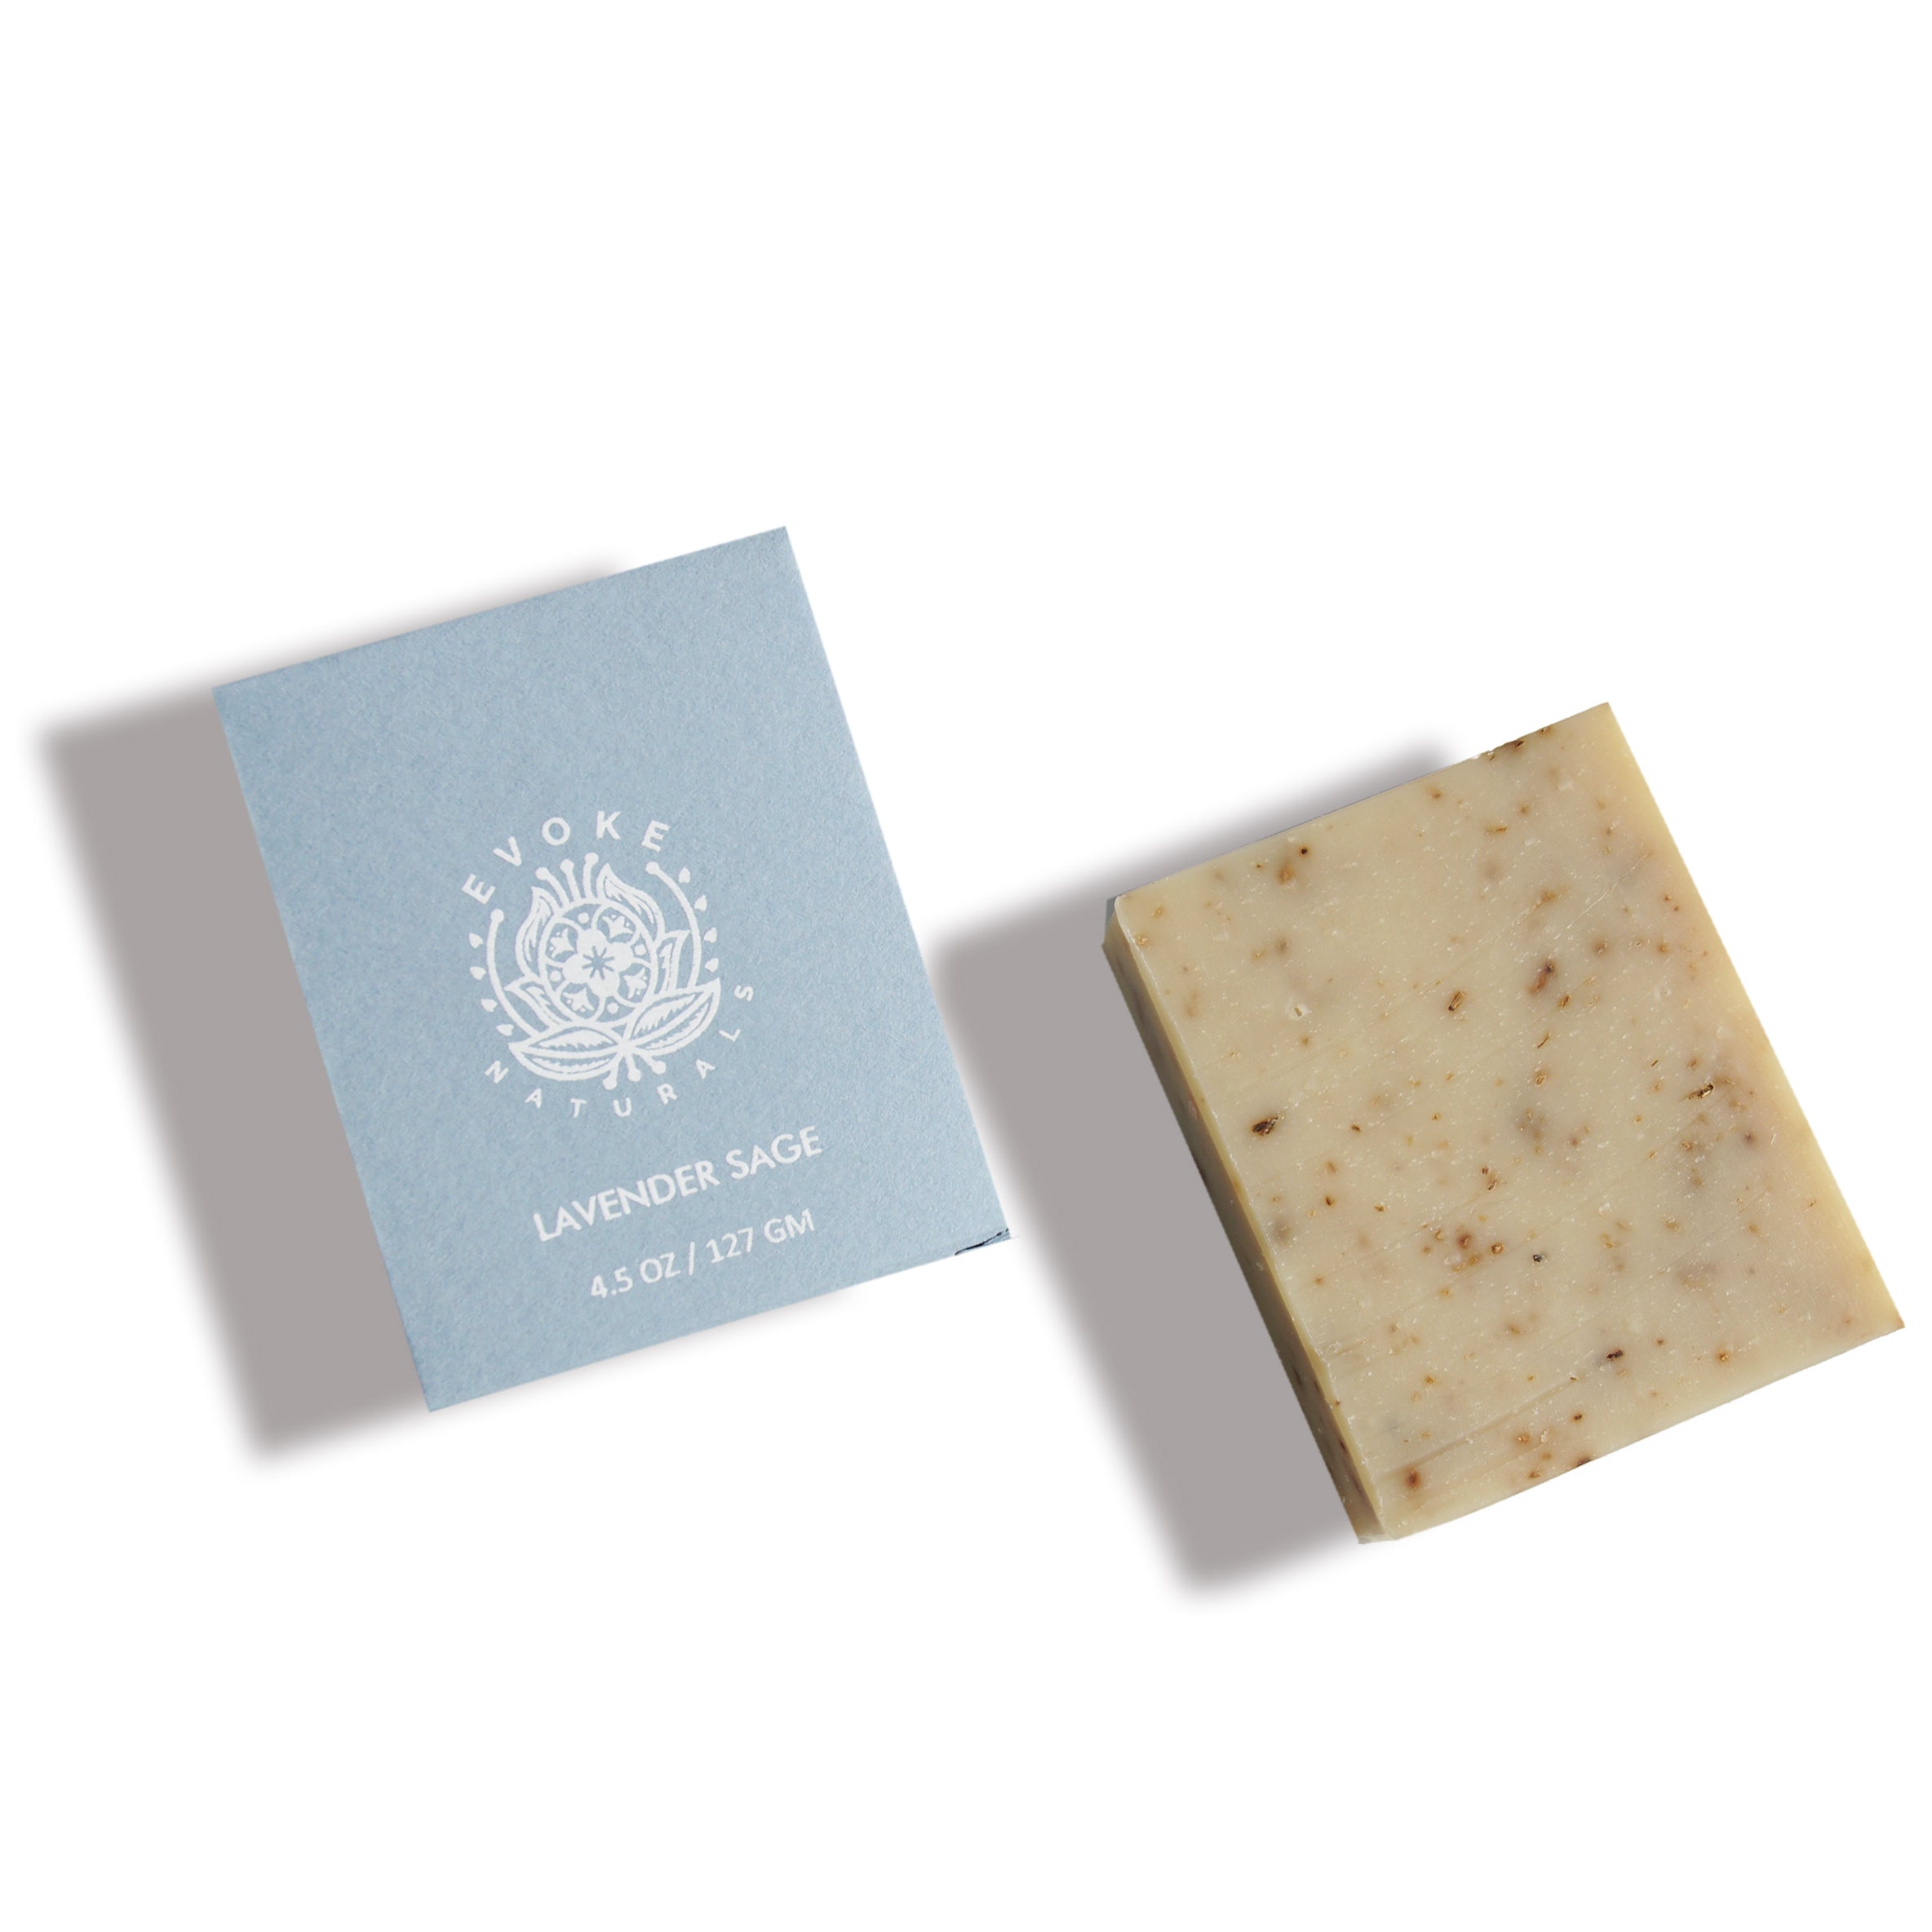 Kaolin Clay – Nurture Soap Making Supplies